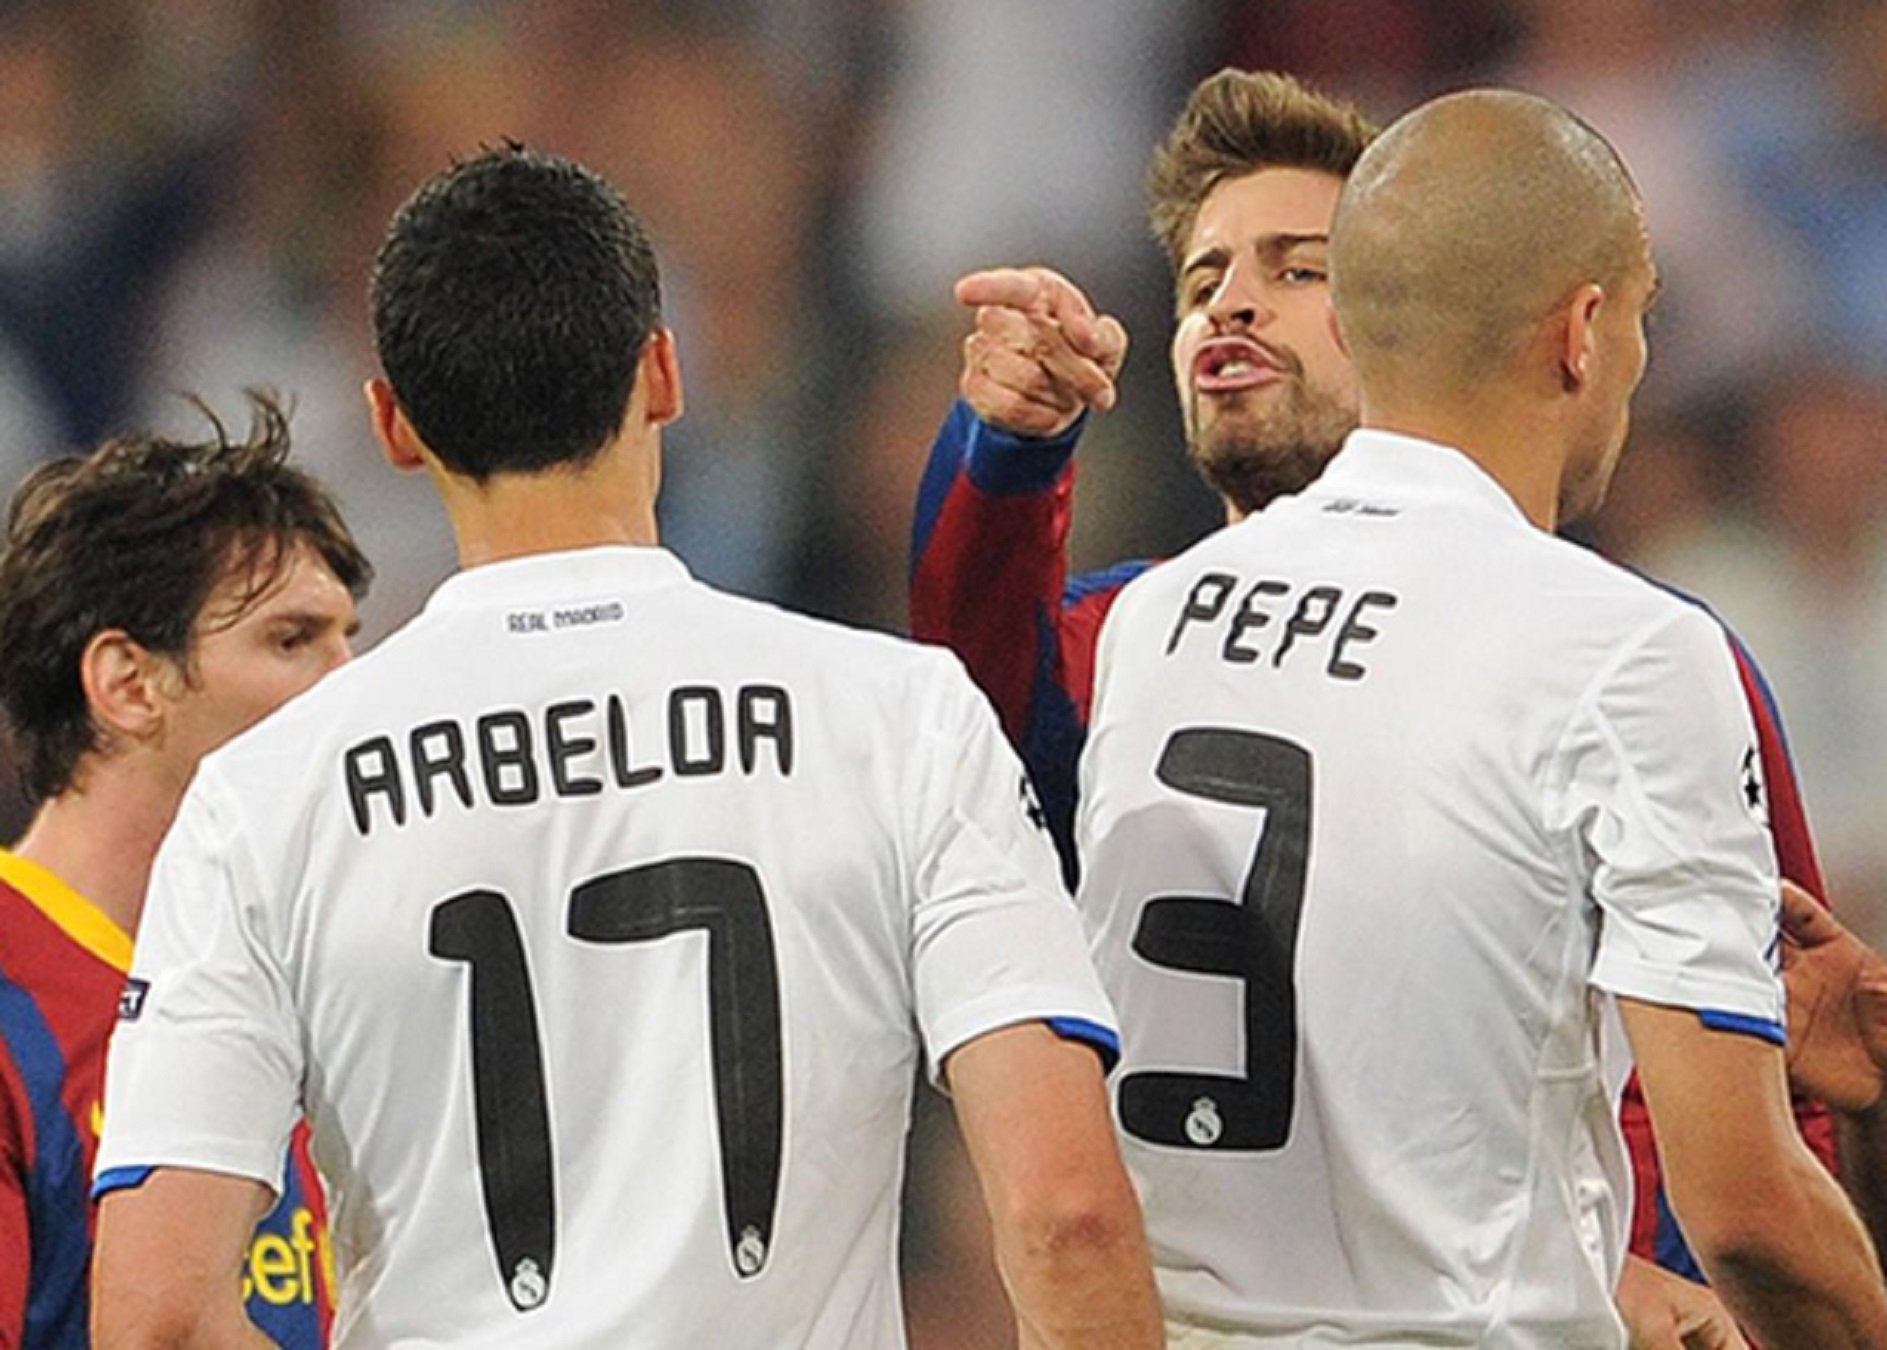 Arbeloa, el "cono-cido" de Piqué, humiliat per la xarxa després del que ha dit de Messi